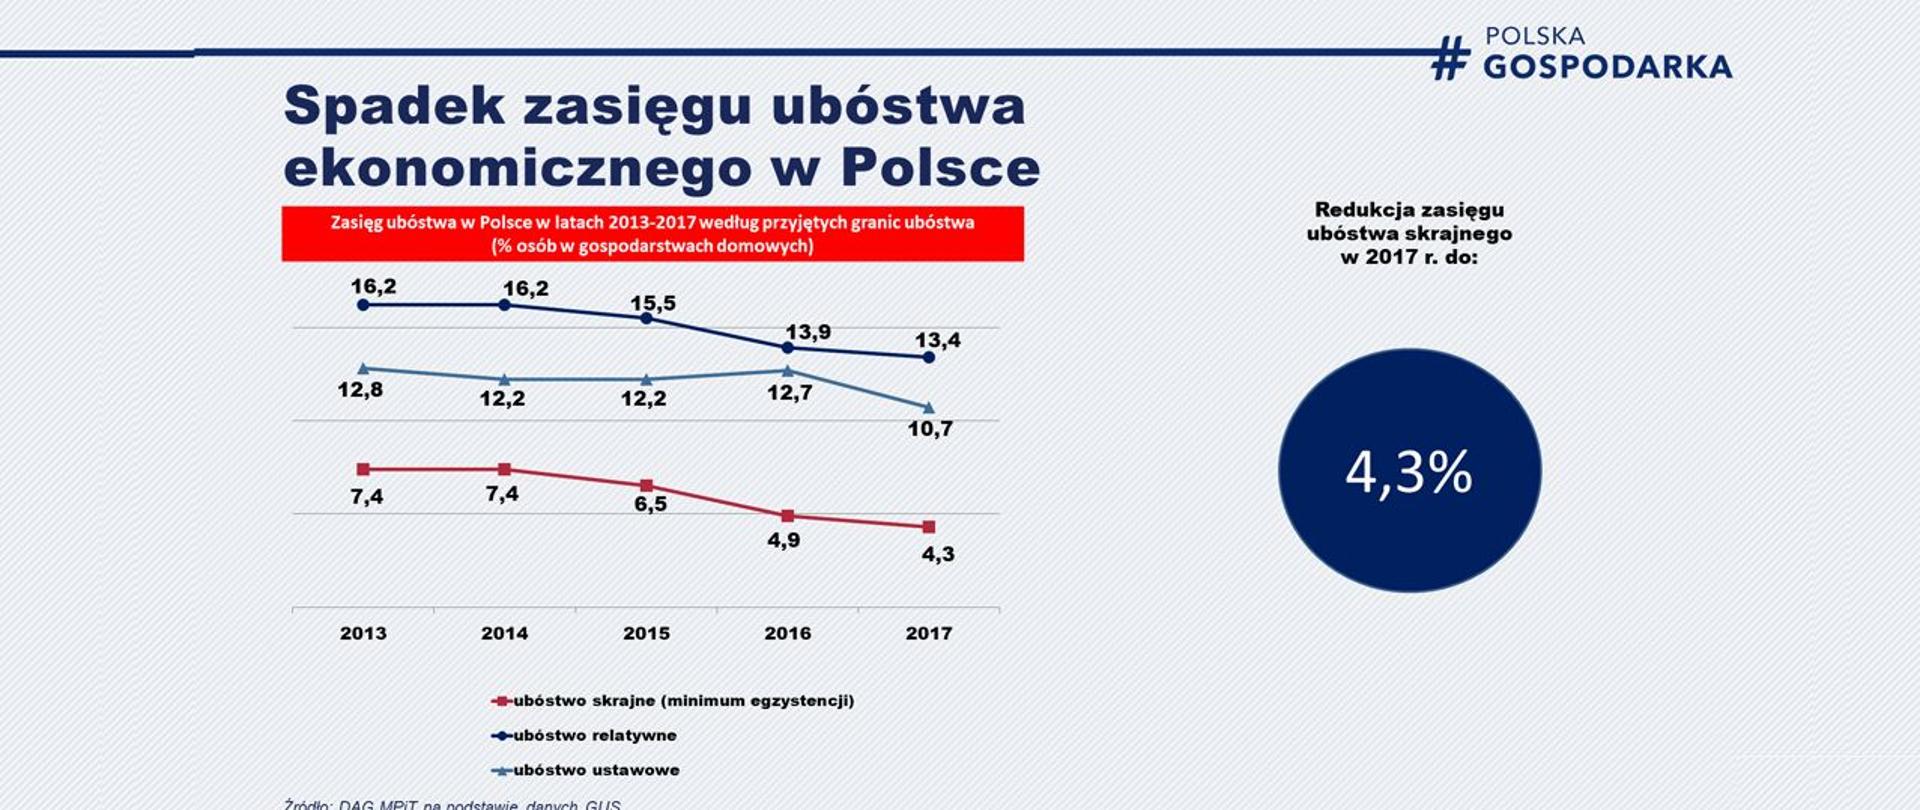 wykres przedstawiający spadek zasięgu ubóstwa w Polsce w latach 2013-2017 z 7,4 proc. do 4,3 proc. 